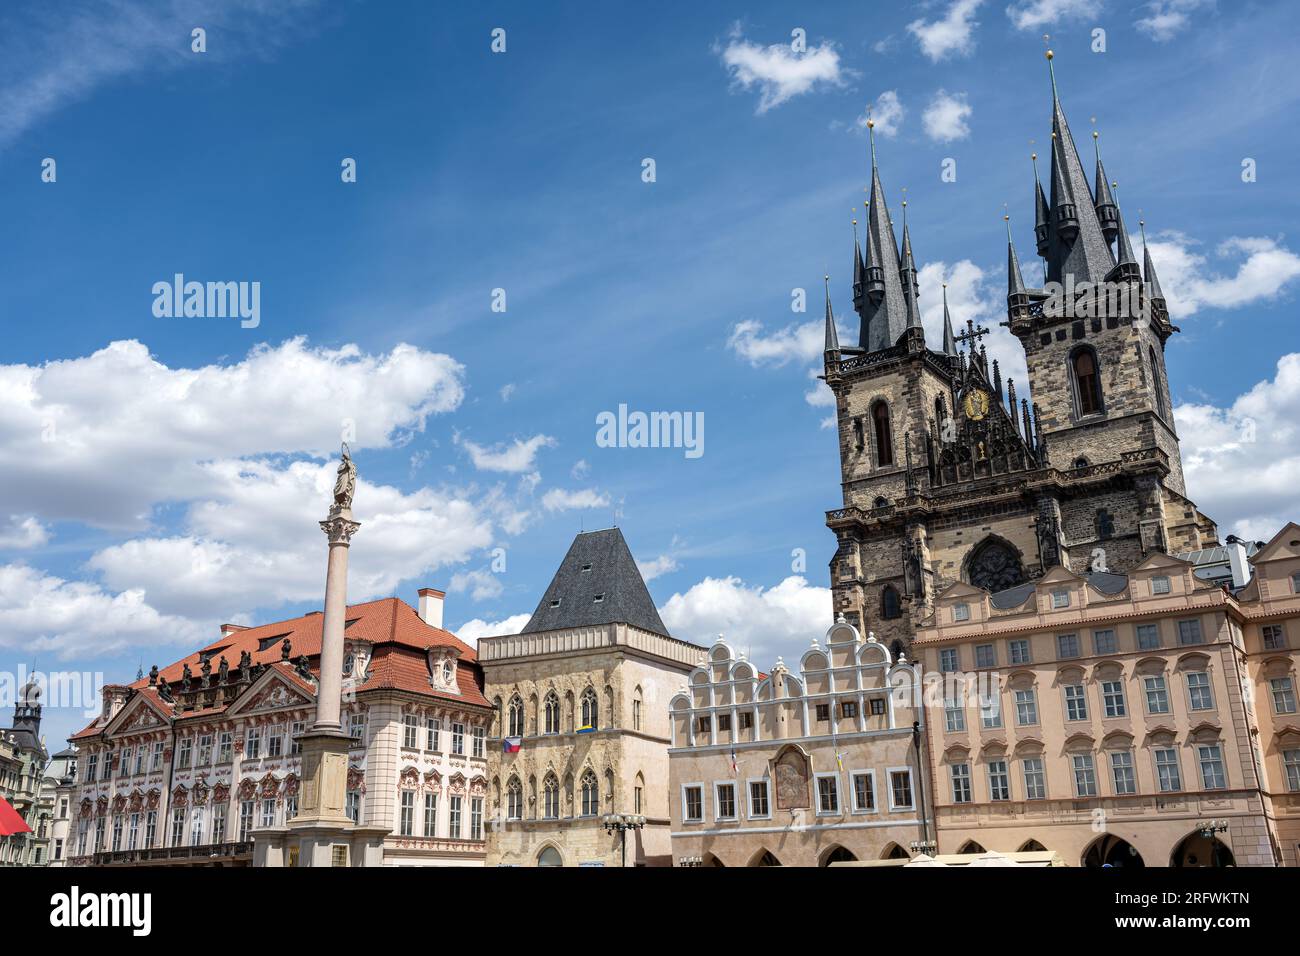 Wunderschöne historische Gebäude und die Tynkirche am Altstädter Ring in Prag, Tschechische Republik Stockfoto